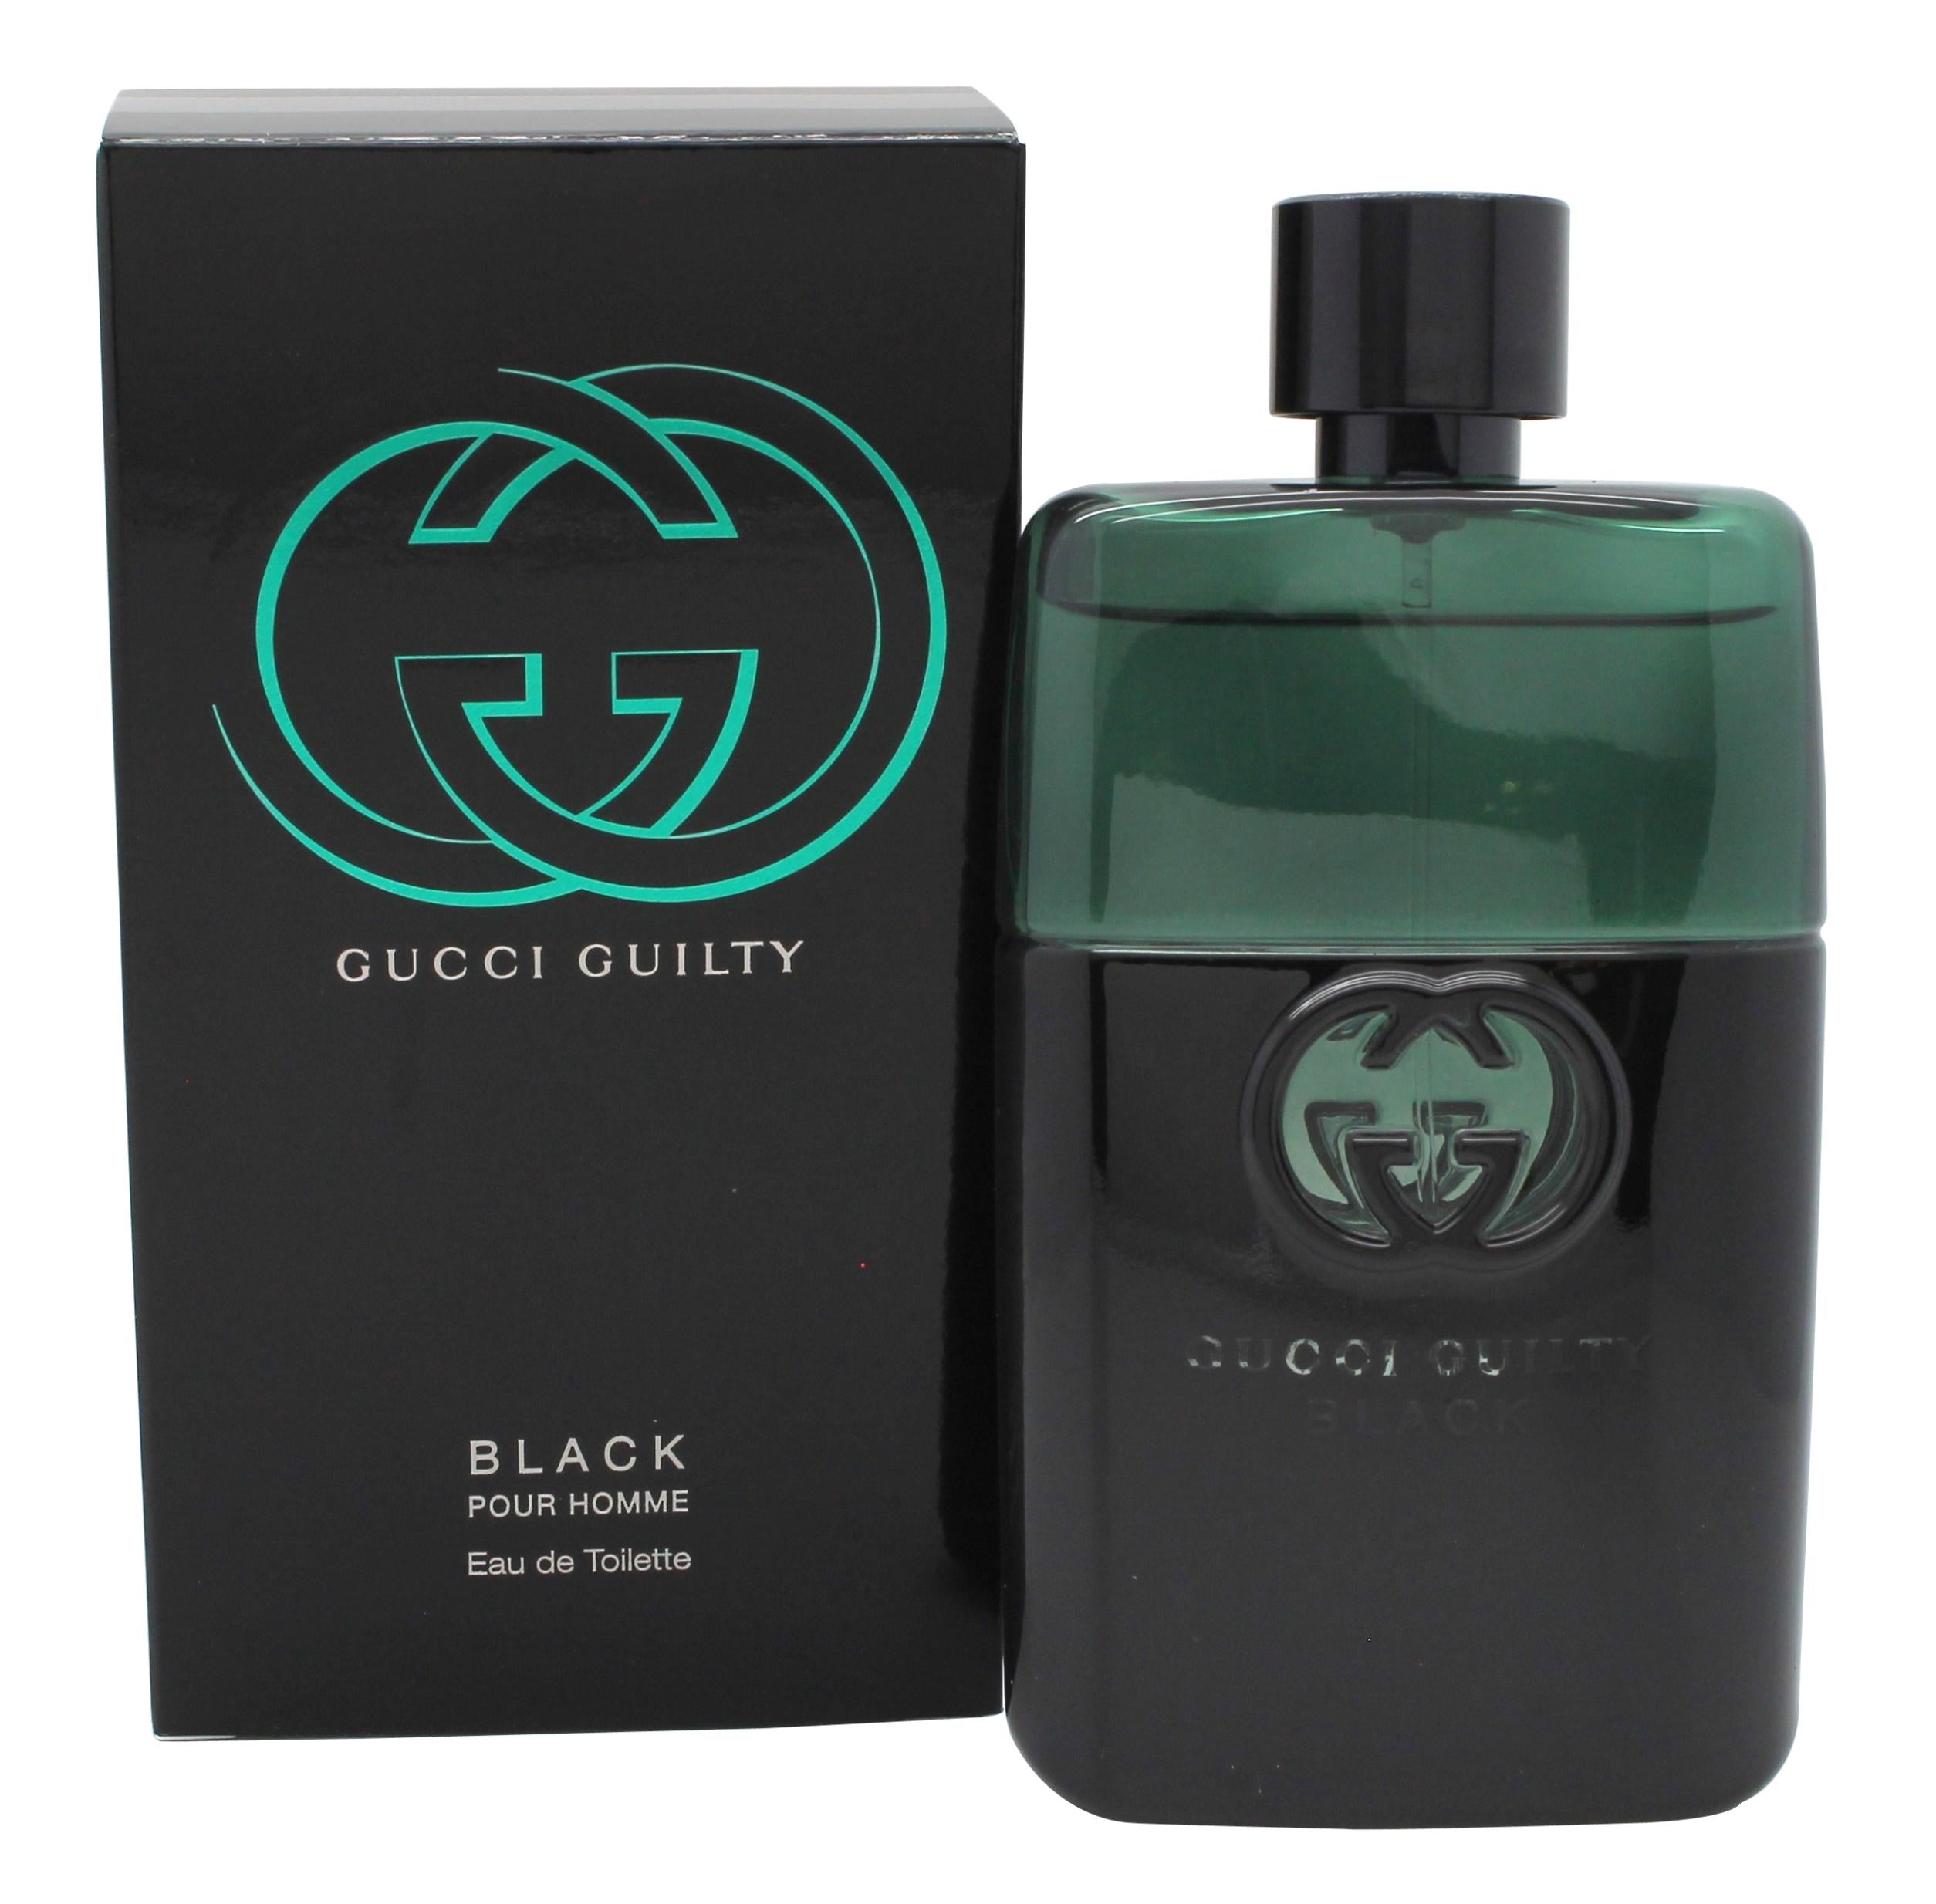 View Gucci Guilty Black Pour Homme Eau de Toilette 90ml Spray information